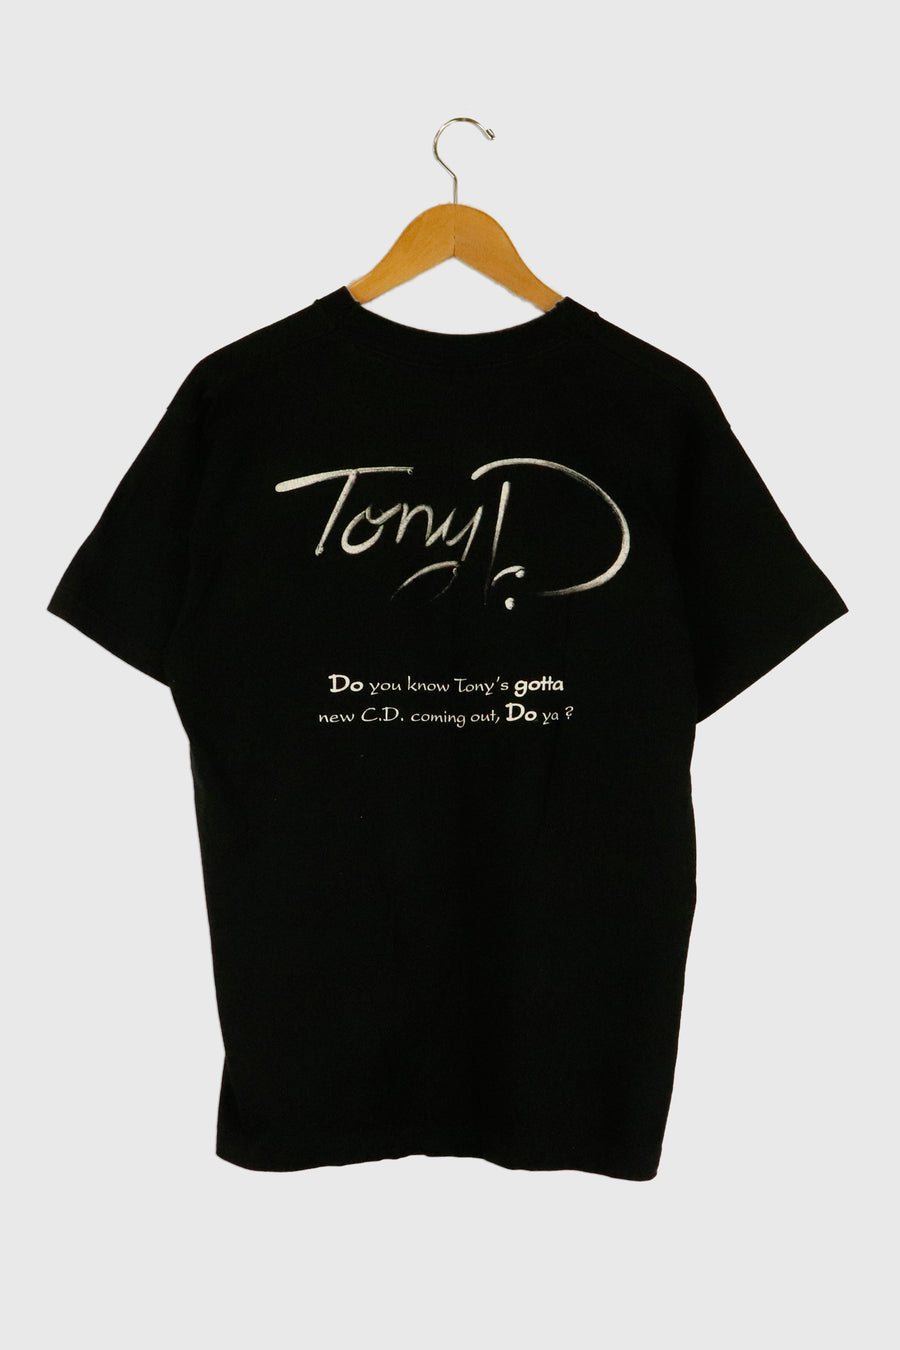 Vintage Tony D Band Graphic T Shirt Sz L